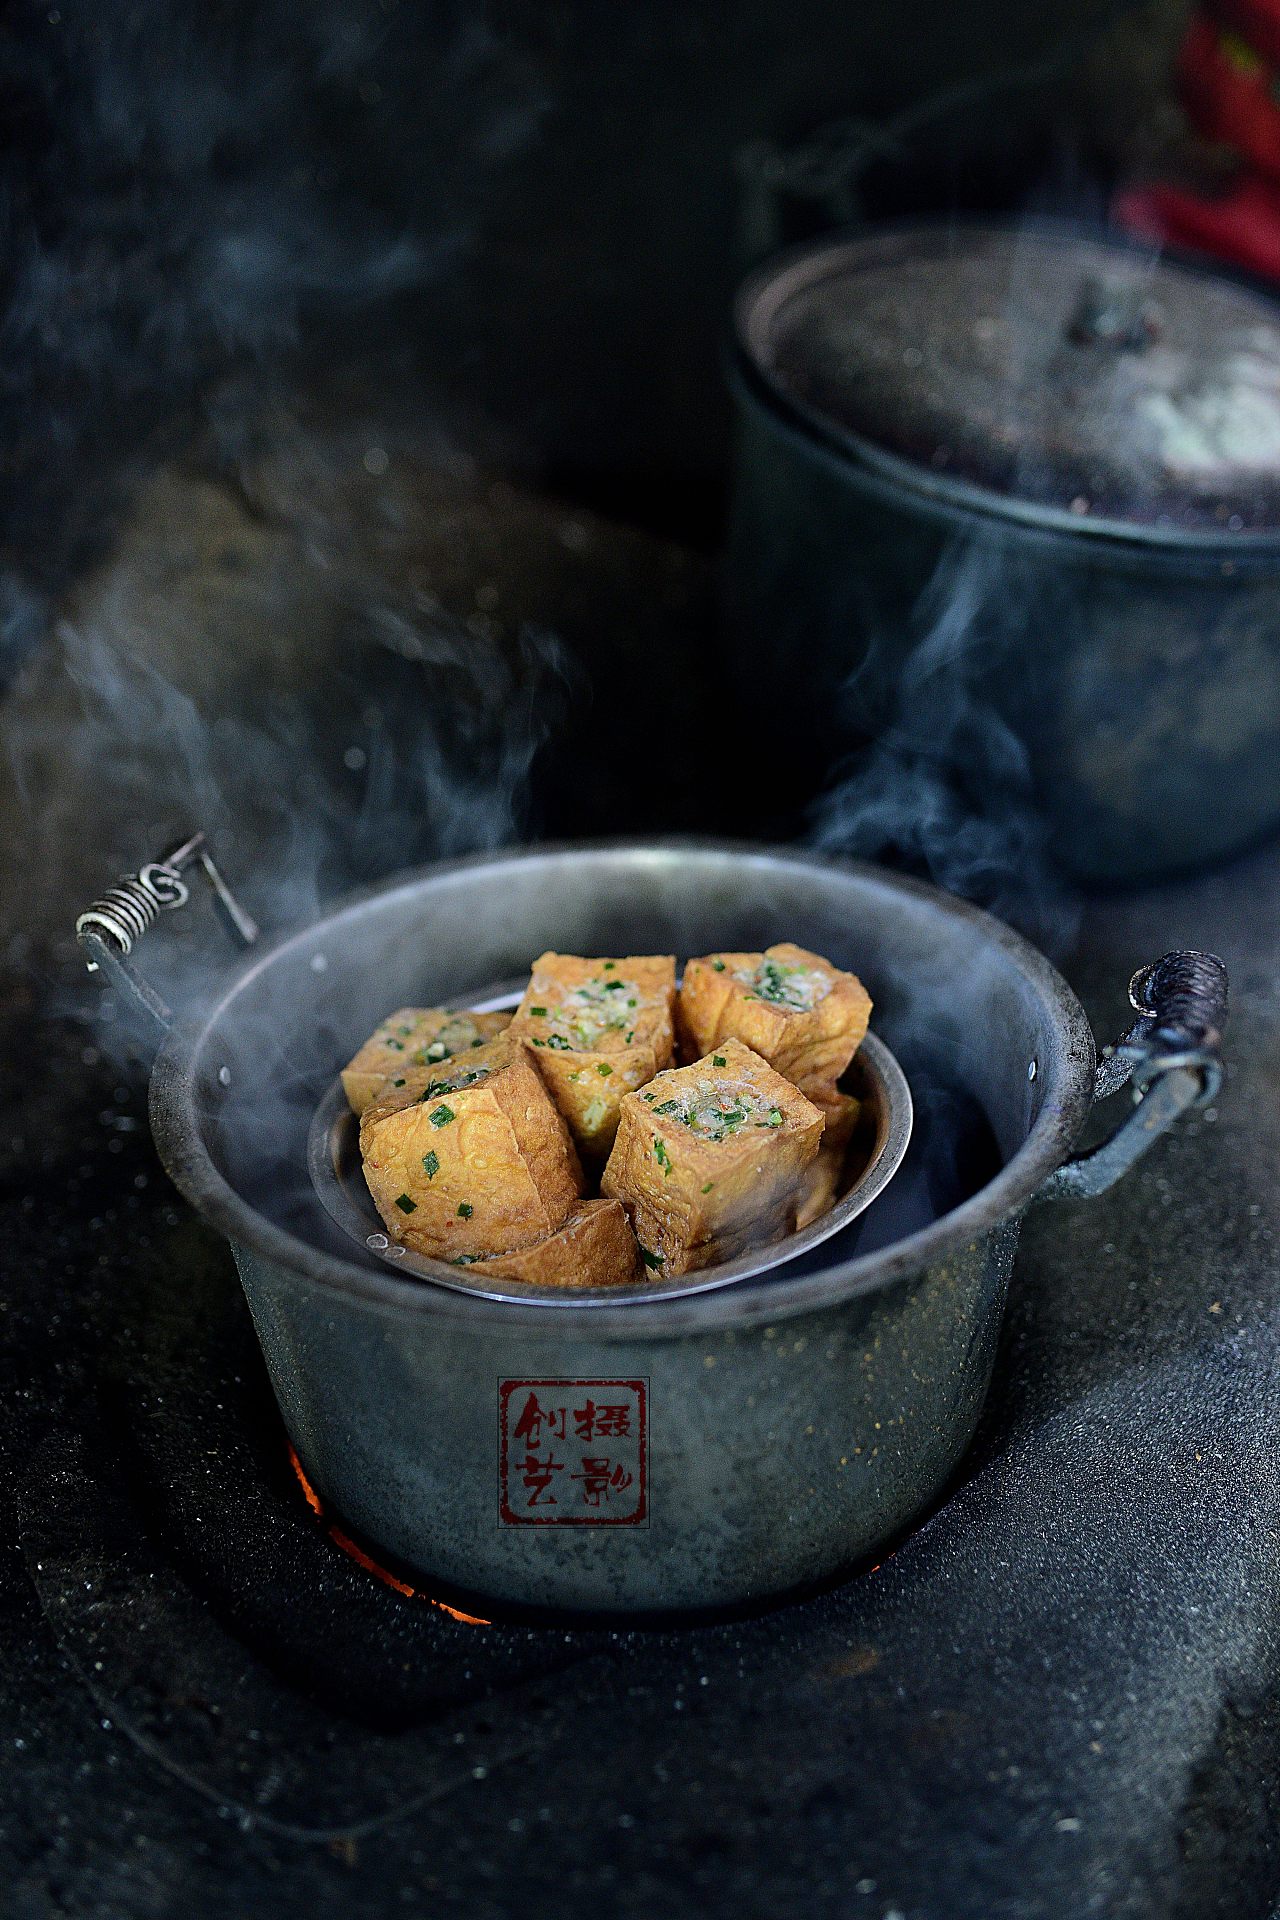 砂锅豆腐酿的做法_菜谱_豆果美食